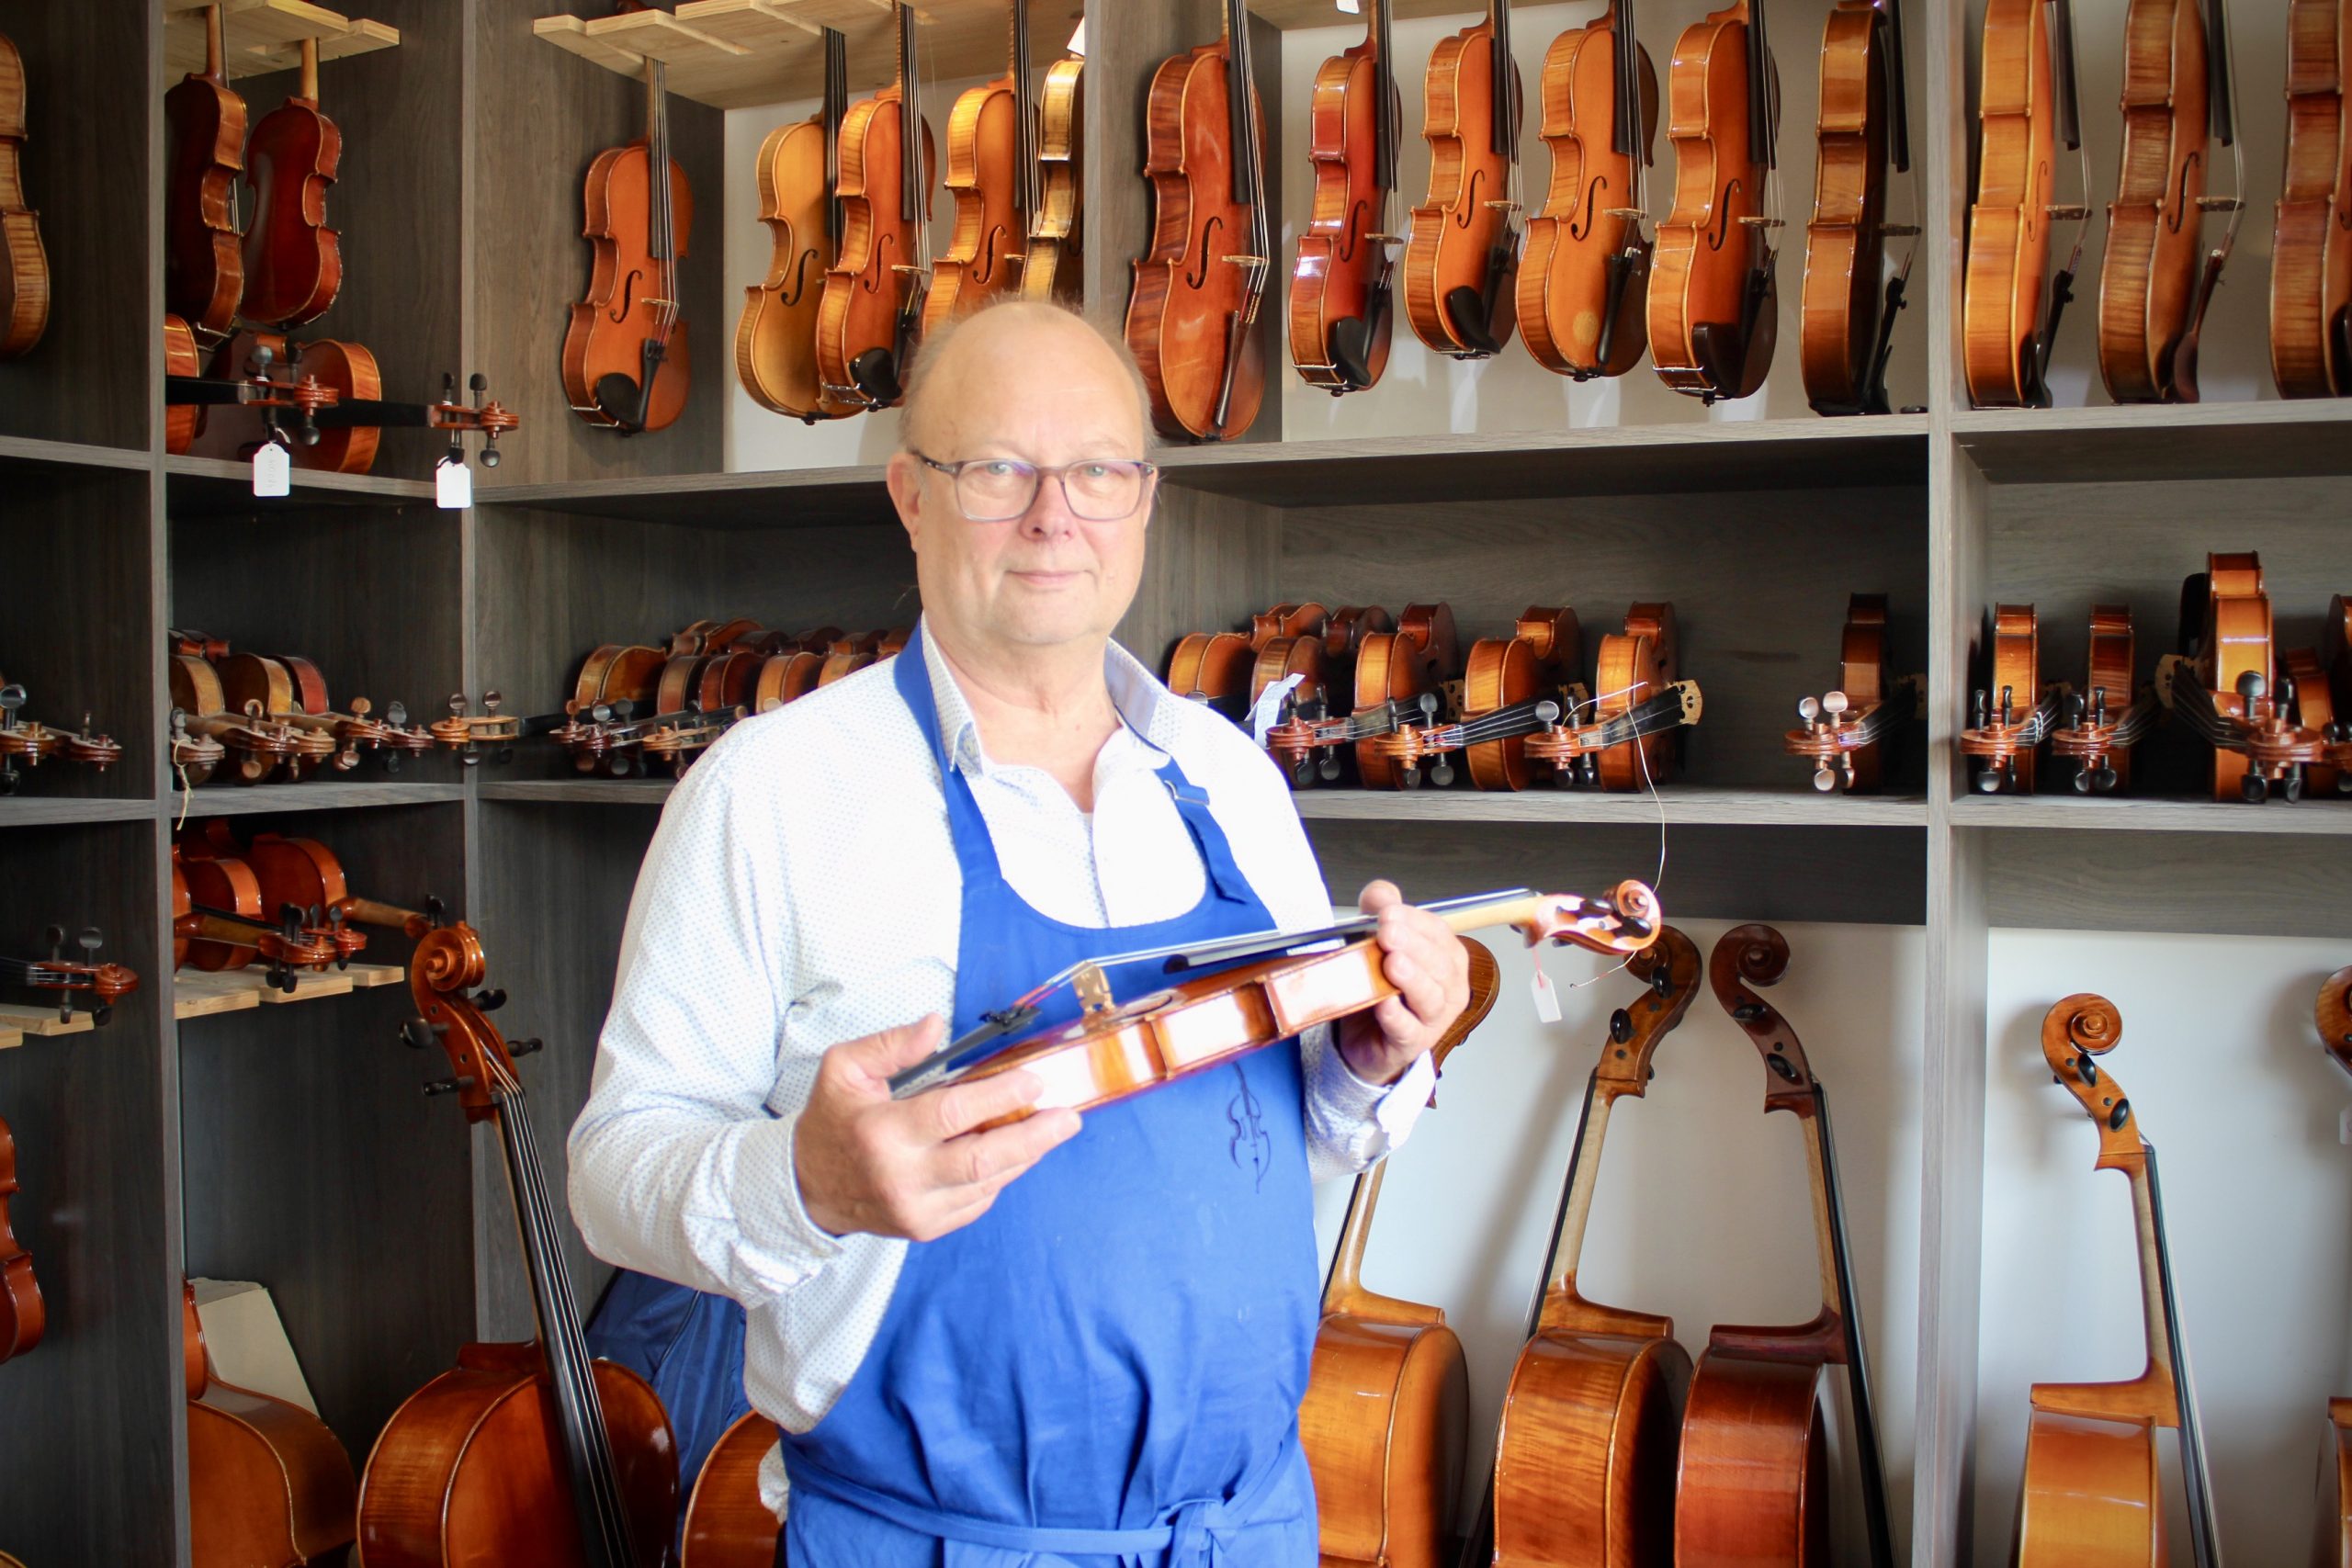 Archet de violon - Violons et archets - Instruments à cordes